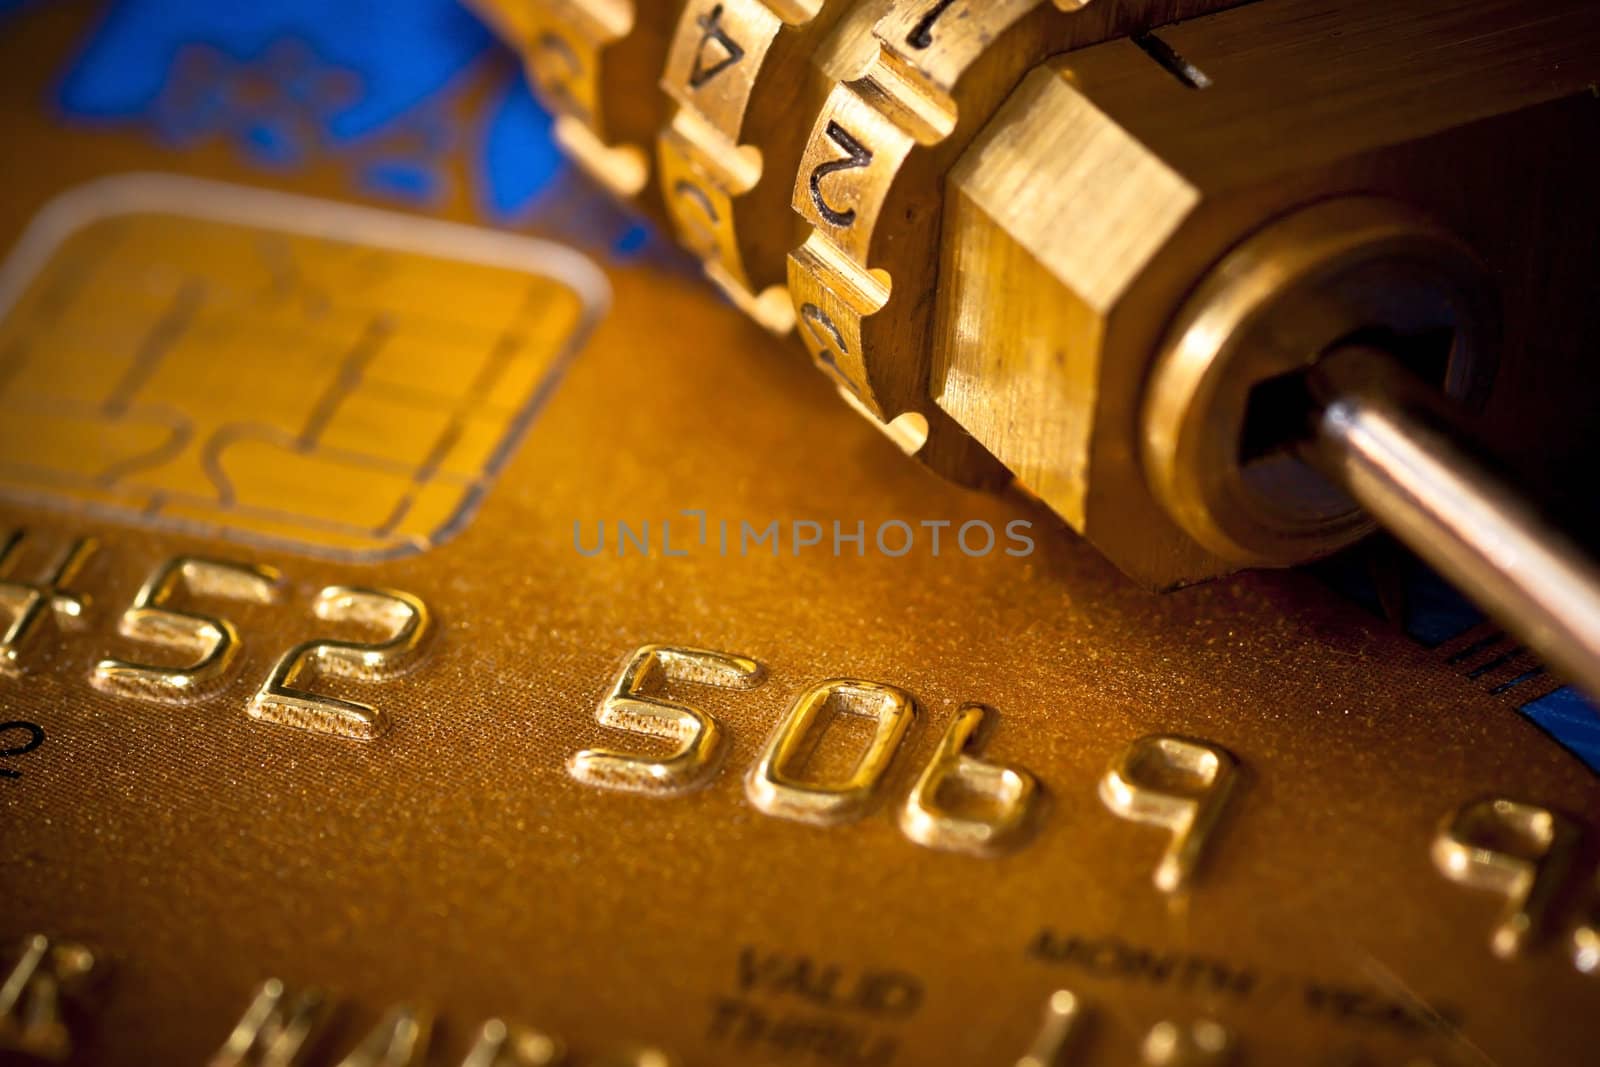 Credit Card Security. Padlock